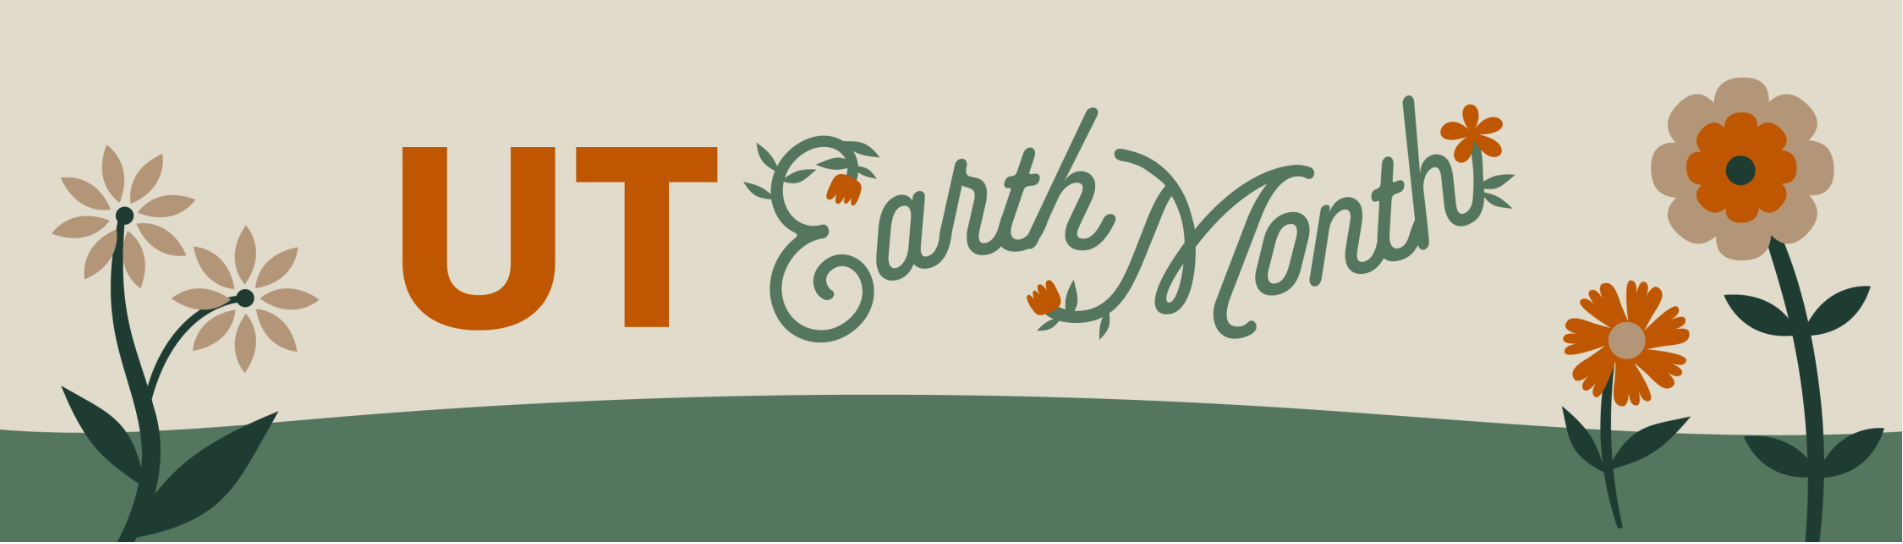 UT Earth Month Banner